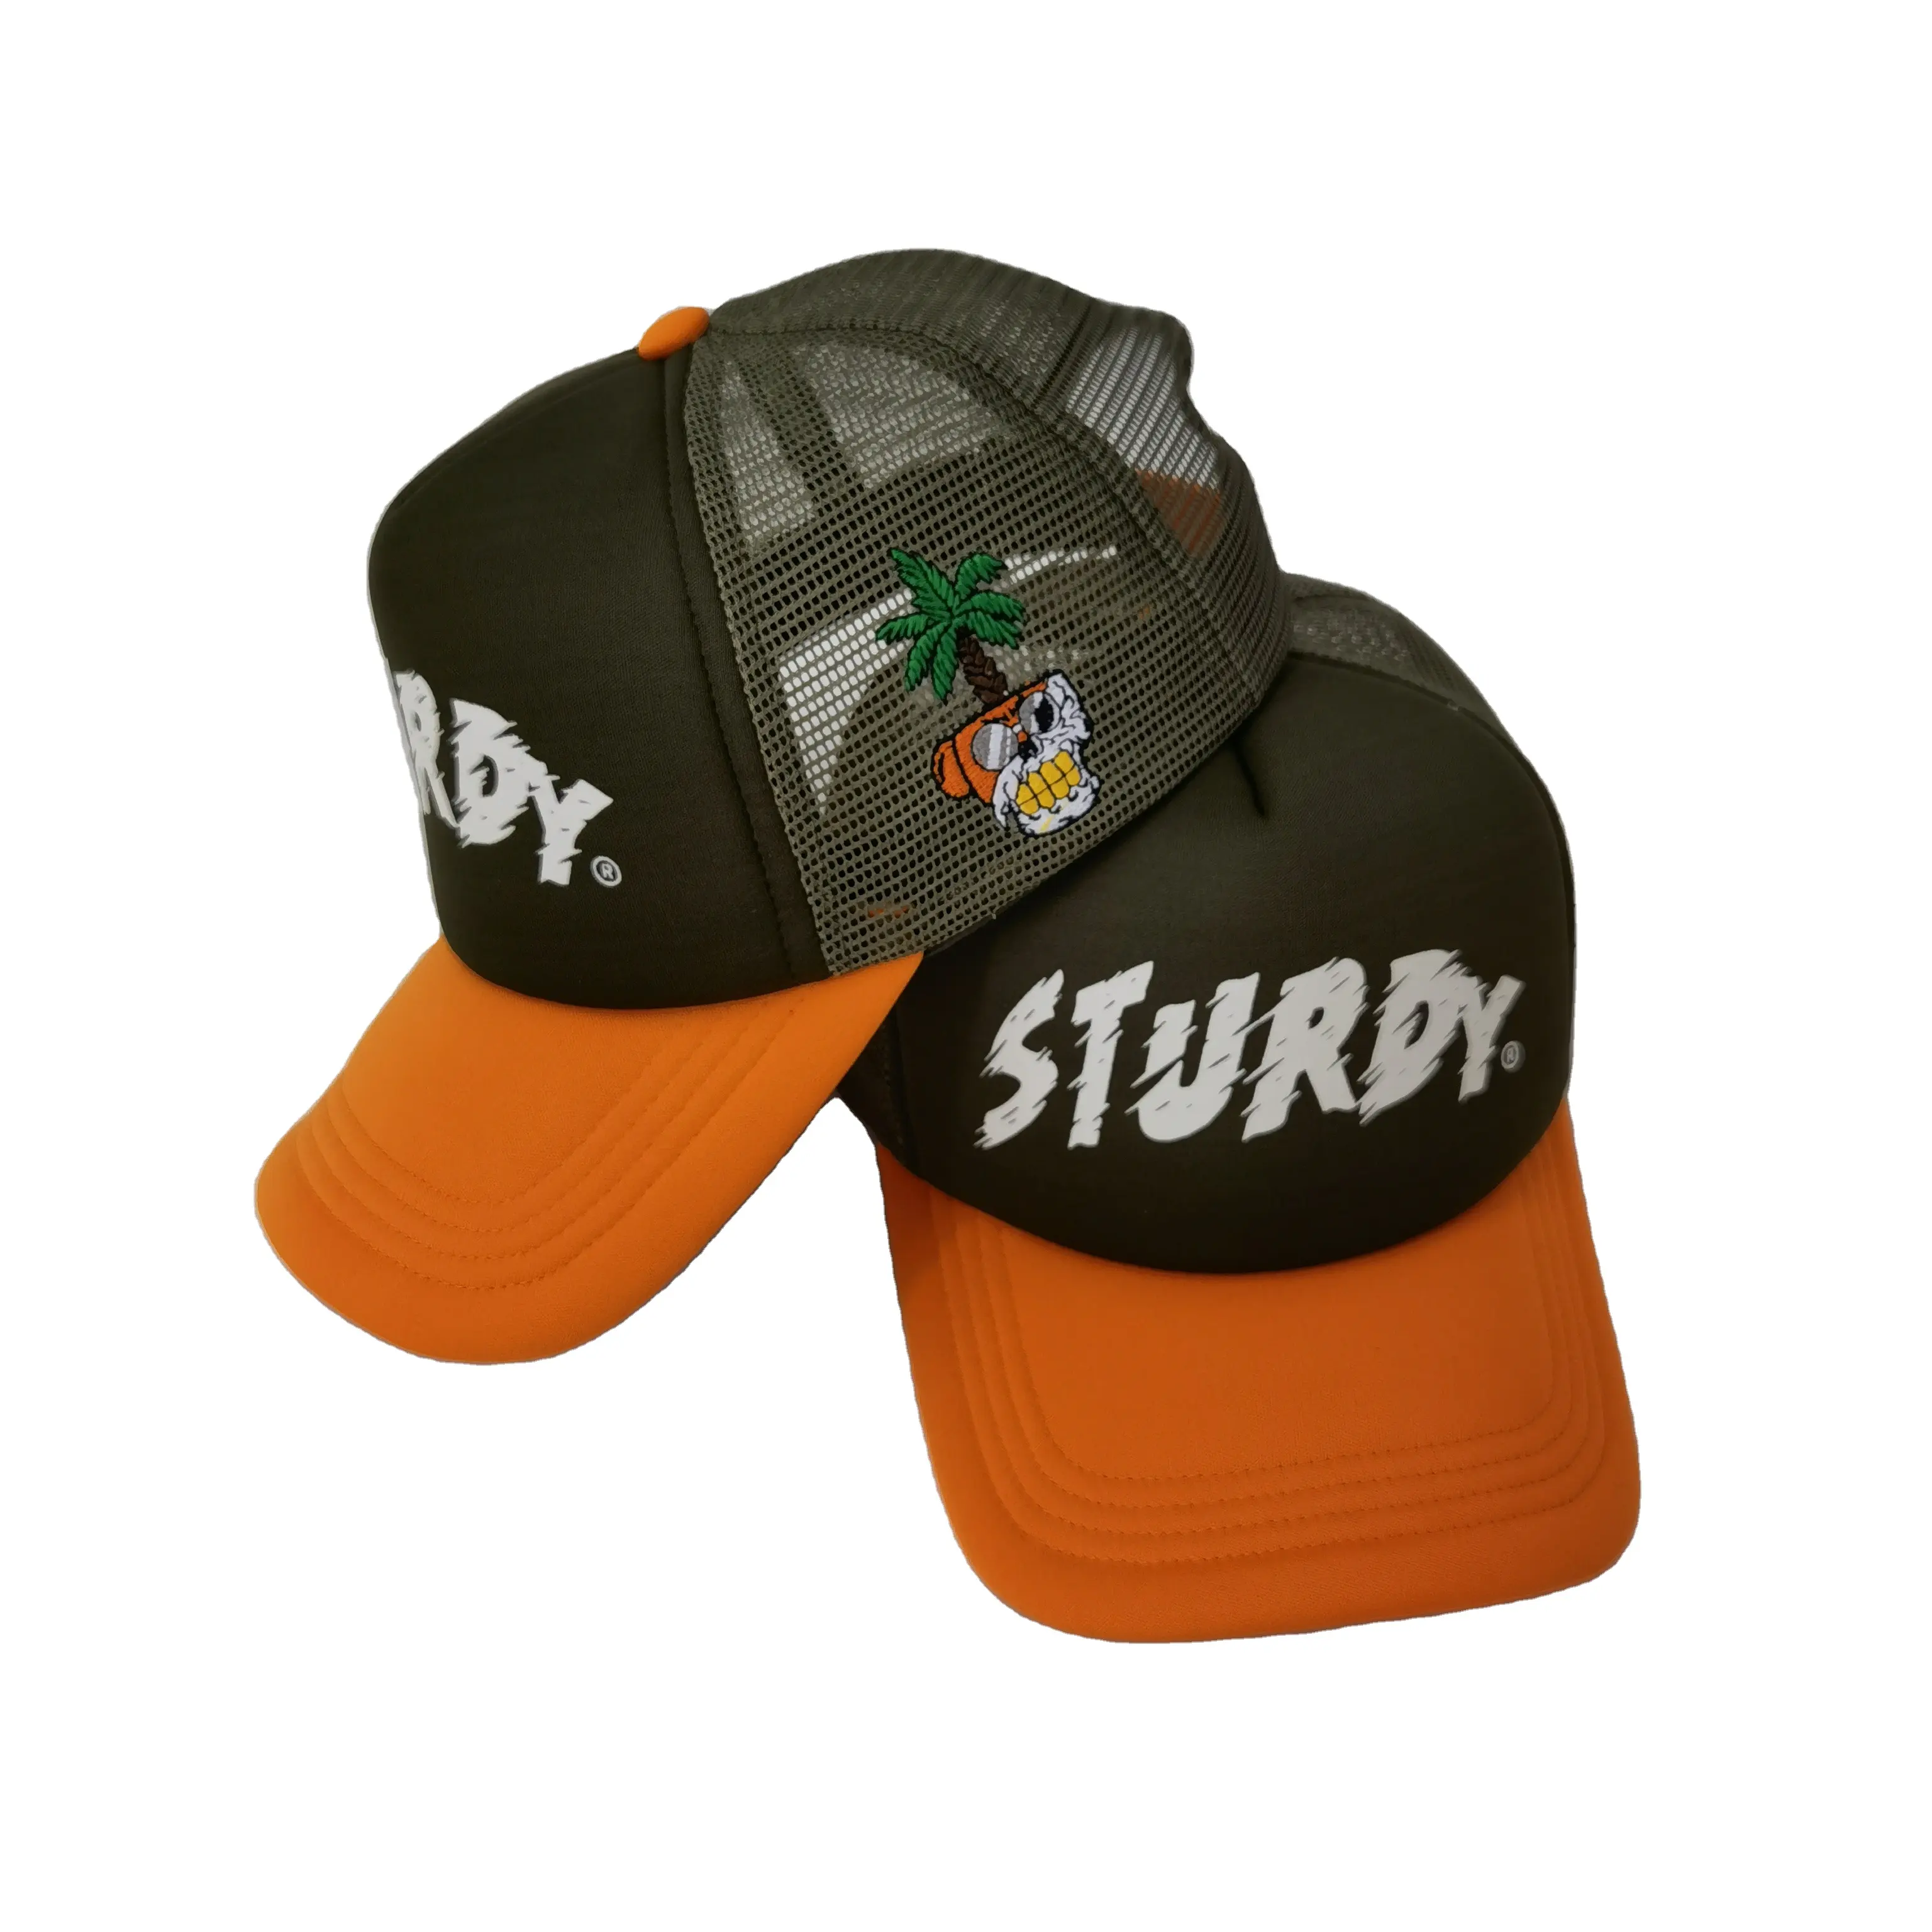 Yüksek kalite özel baskı cence lulogo logo mesh köpük aydınlık spor şapka gorras toptan şoför şapkası